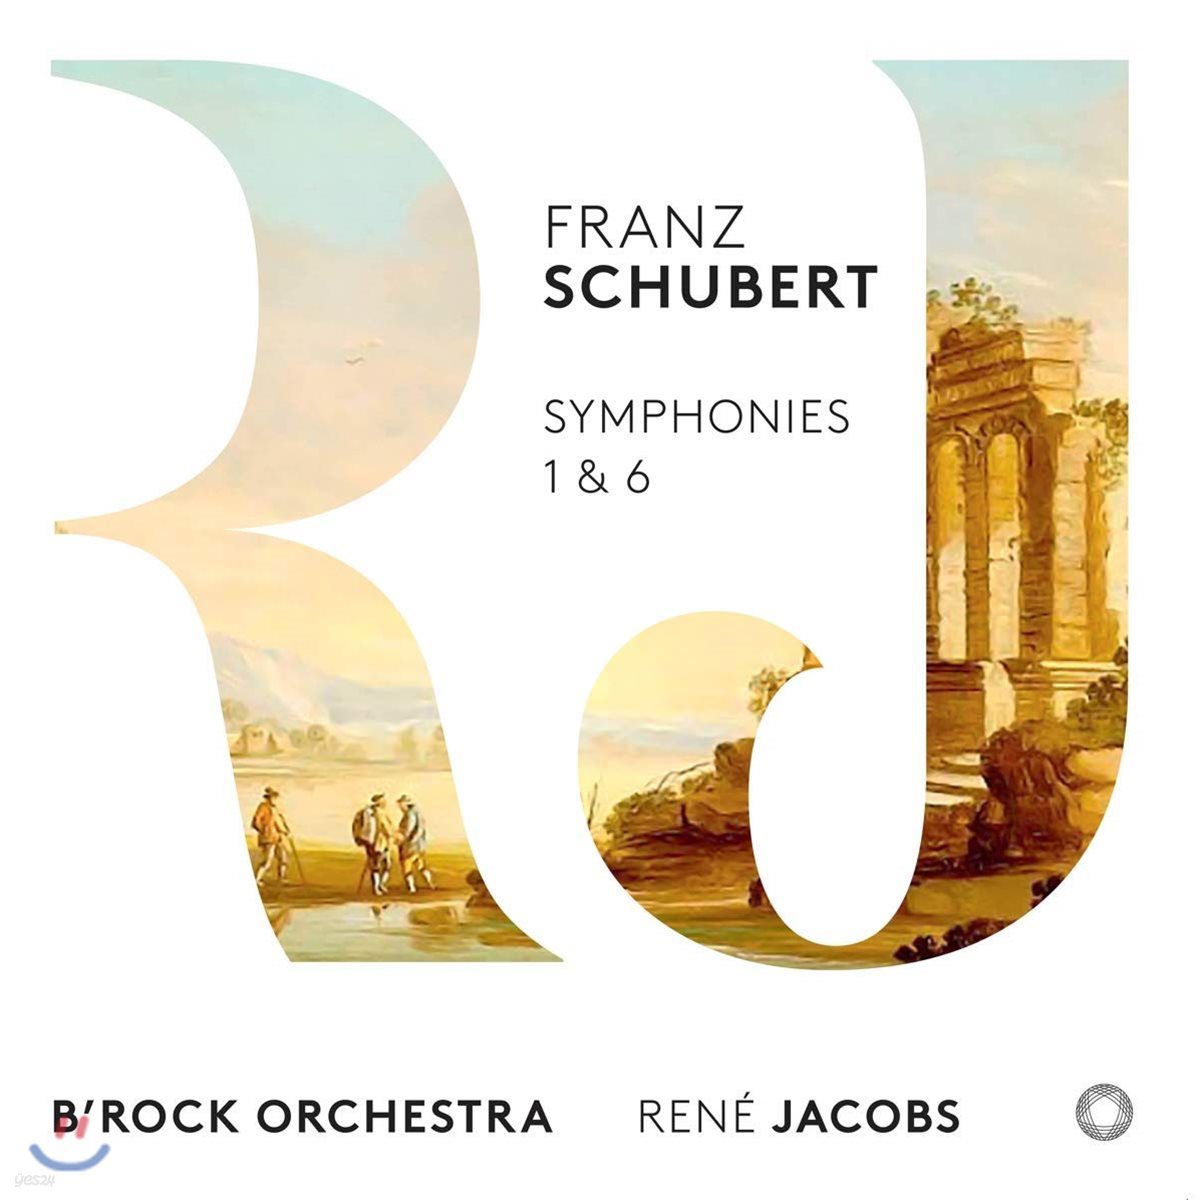 Rene Jacobs 슈베르트: 교향곡 1번, 6번 (Schubert: Symphonies 1 & 6) 르네 야콥스